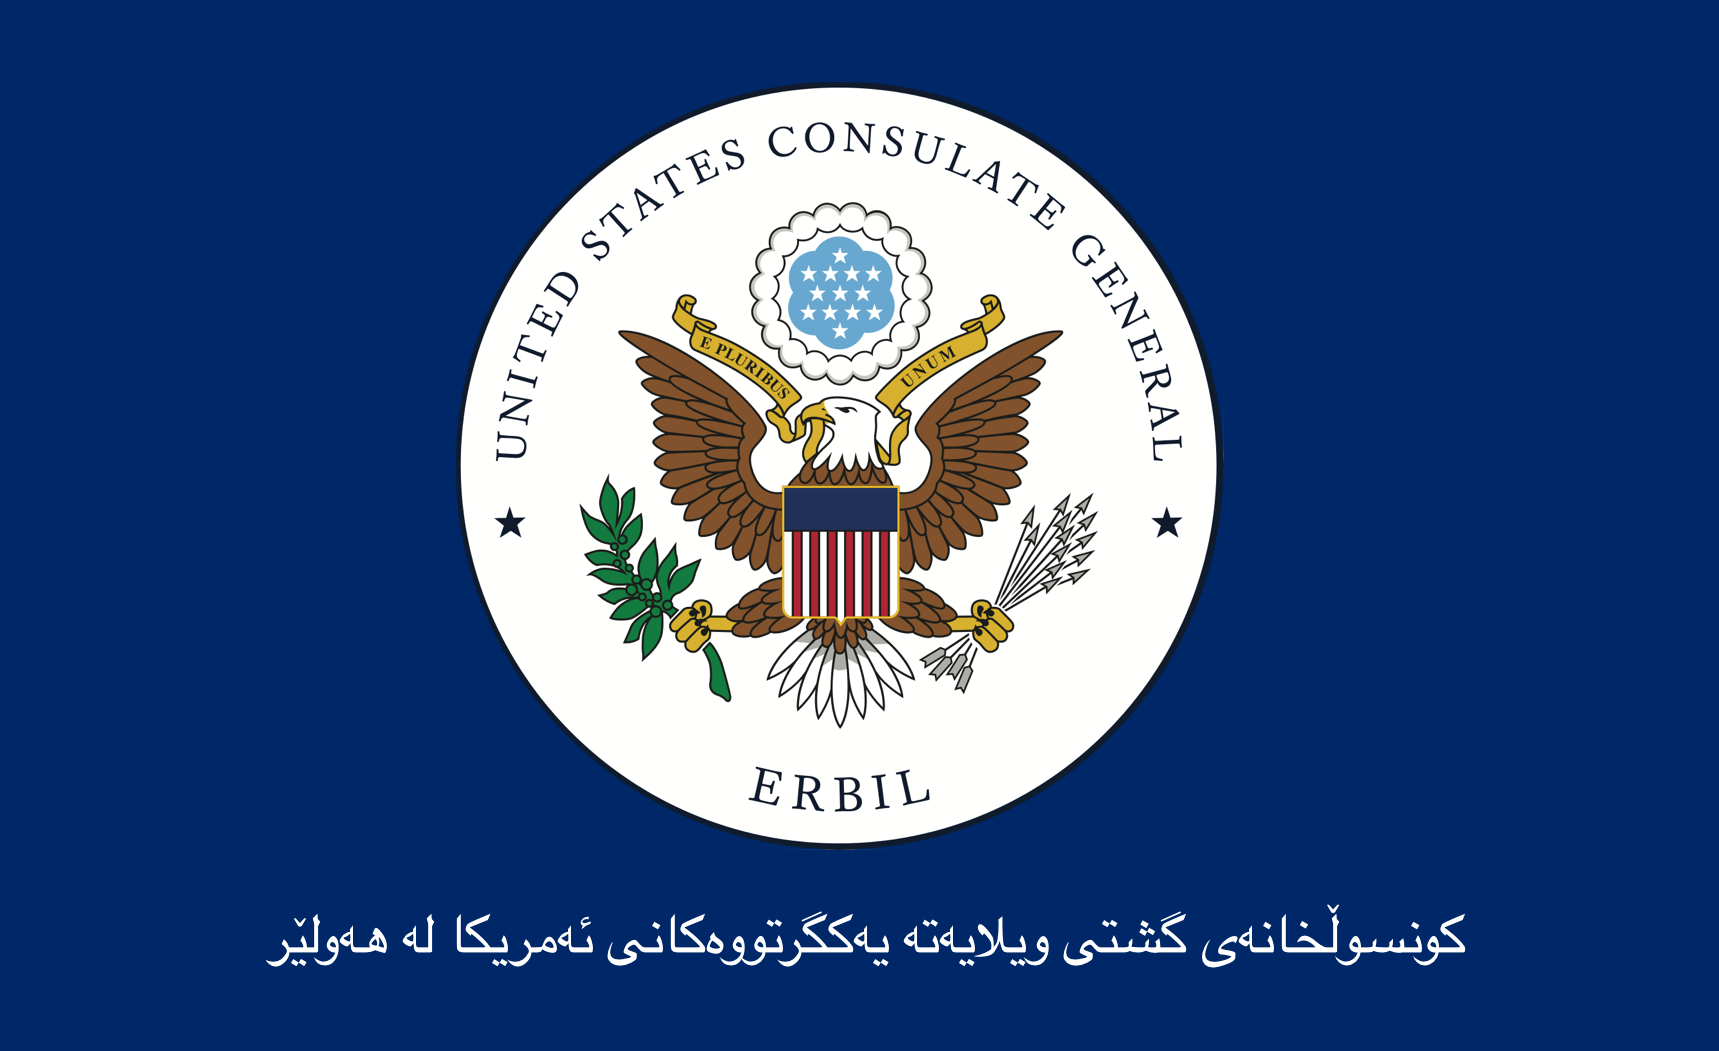 ABD'nin Erbil Başkonsolosluğu’ndan Peşmergeye destek mesajı